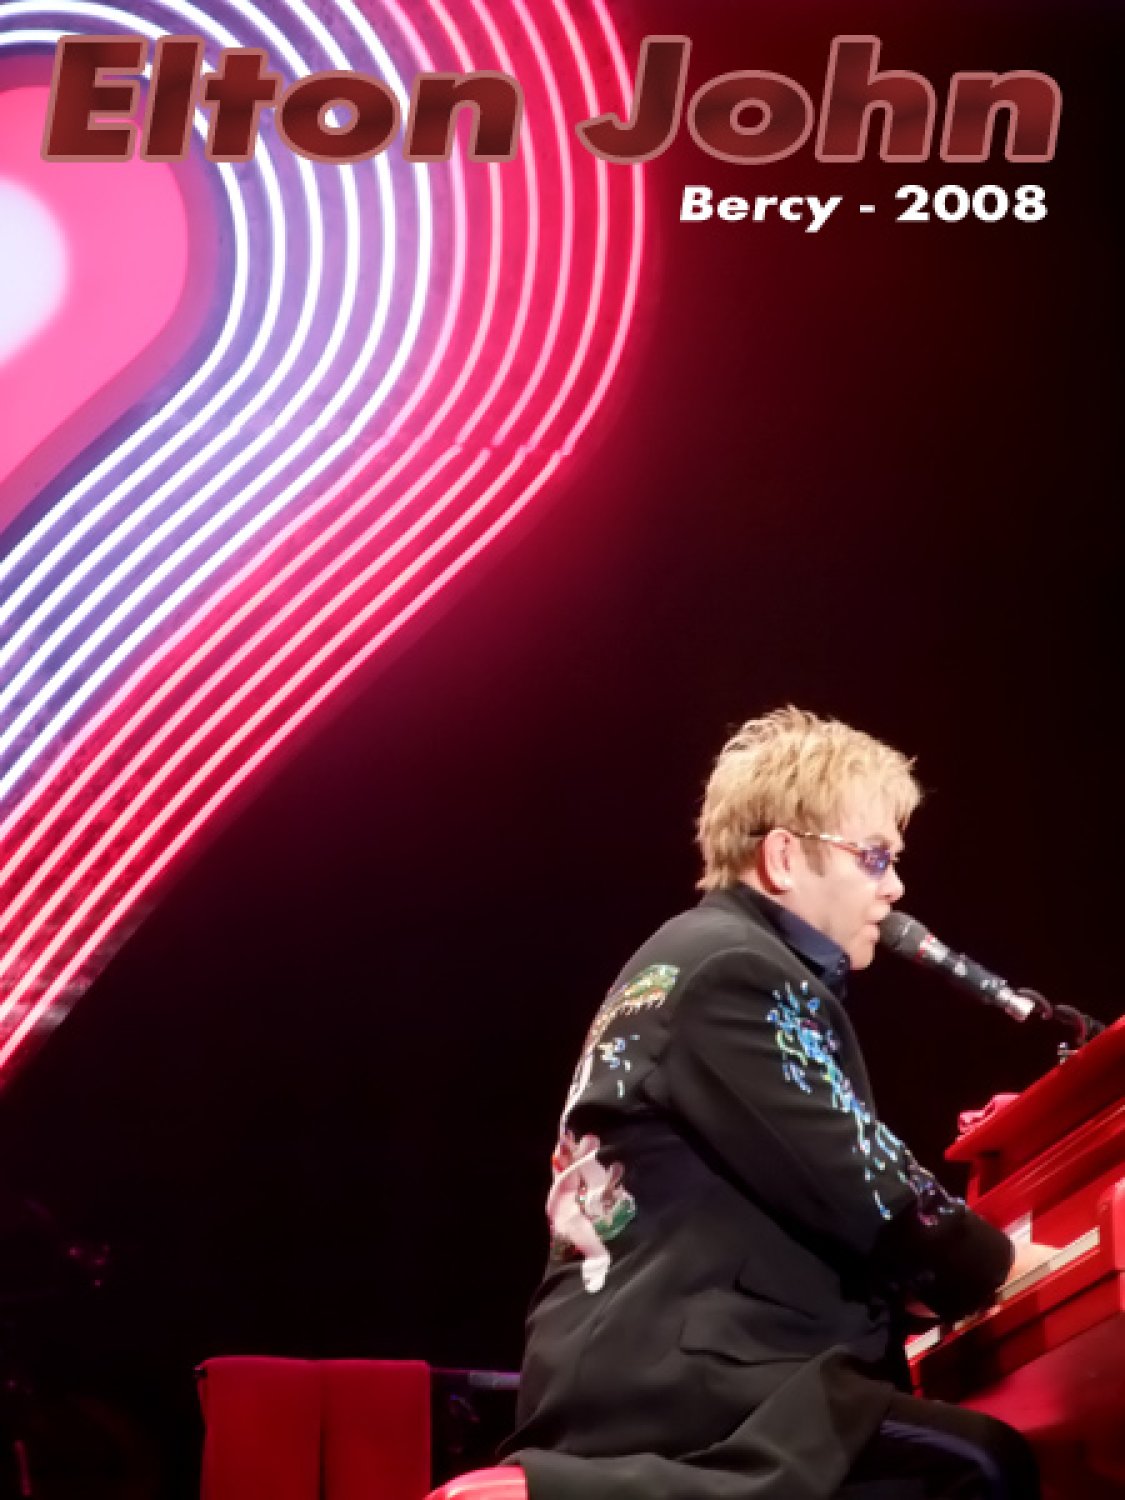 Elton John The Red Piano (Bercy - 2008)